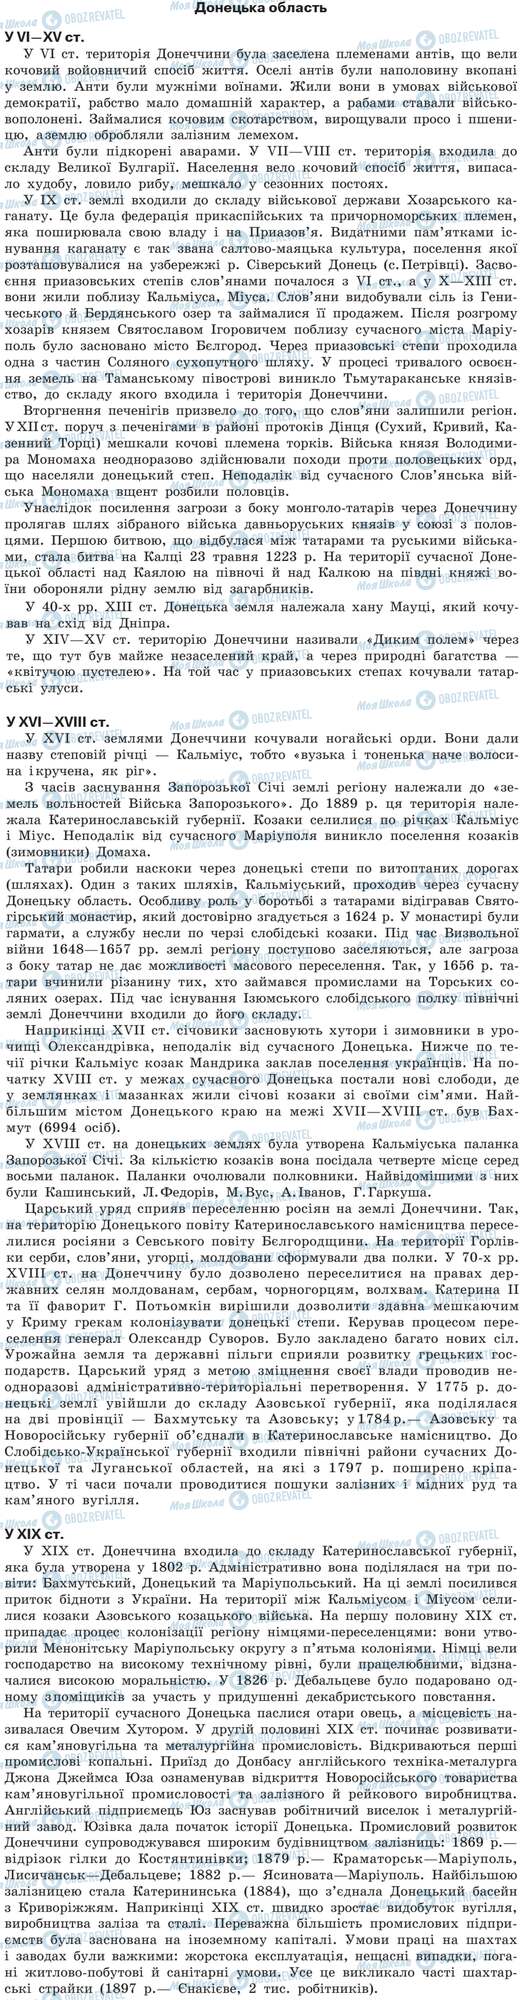 ДПА Історія України 9 клас сторінка Донецька область